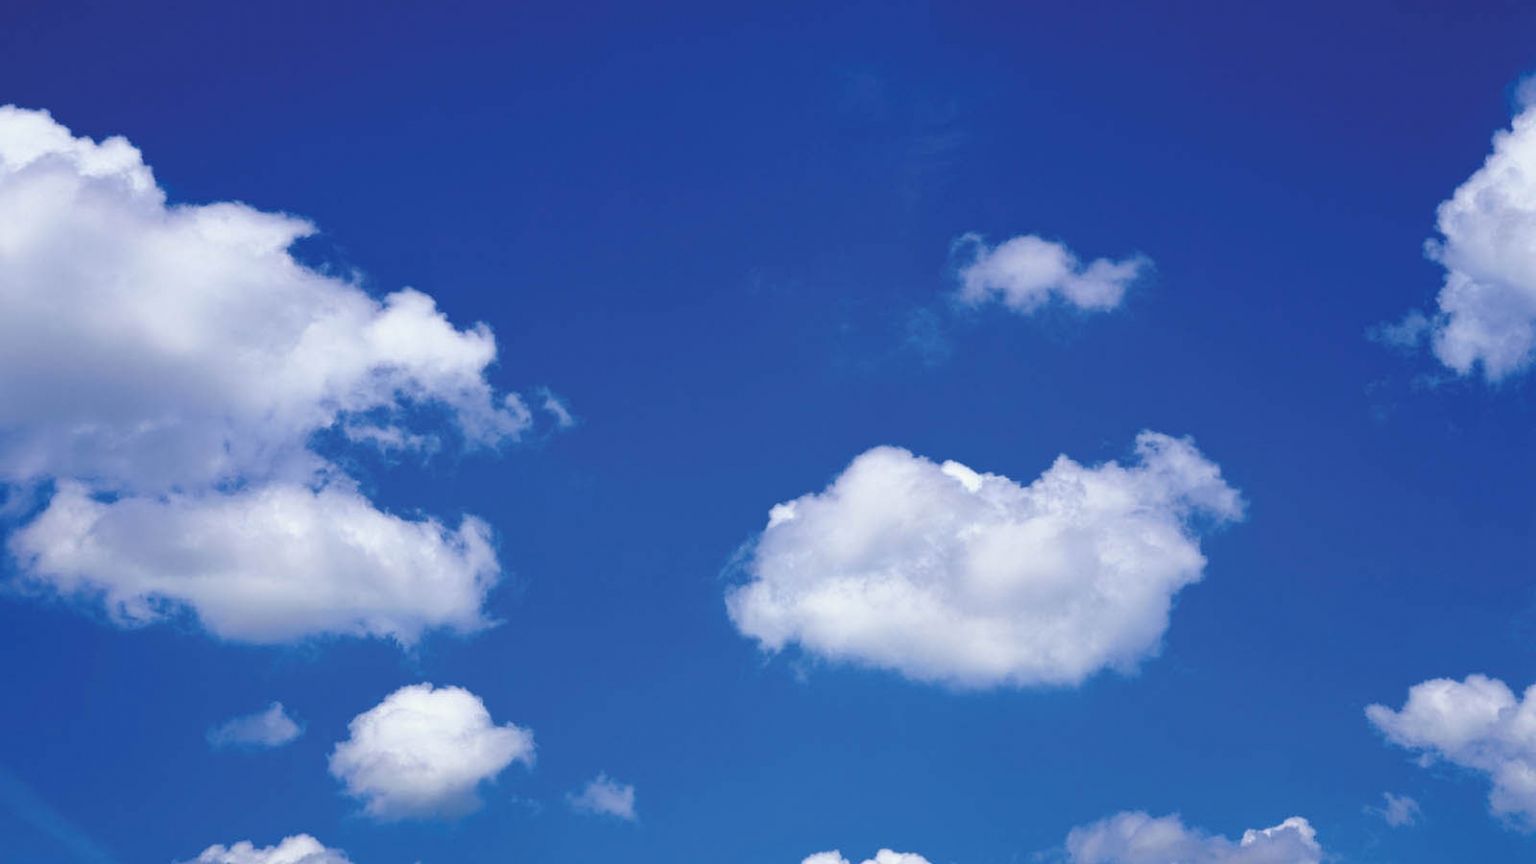 Free download blue sky desktop wallpaper blue sky background